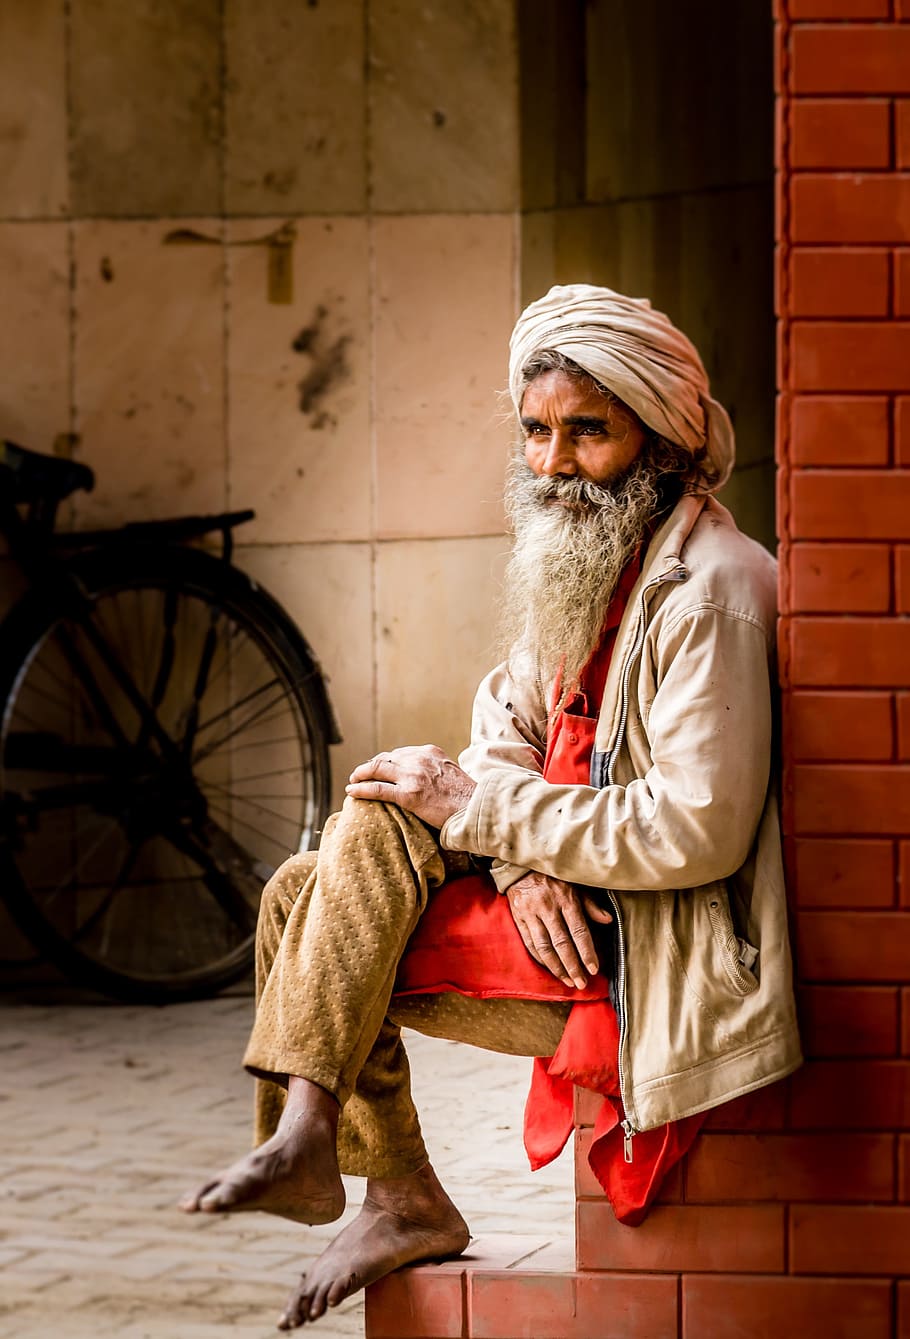 男, 座っている, レンガの壁, インド人, 肖像画, 人間, ターバン, 顔, 一人, 衣類